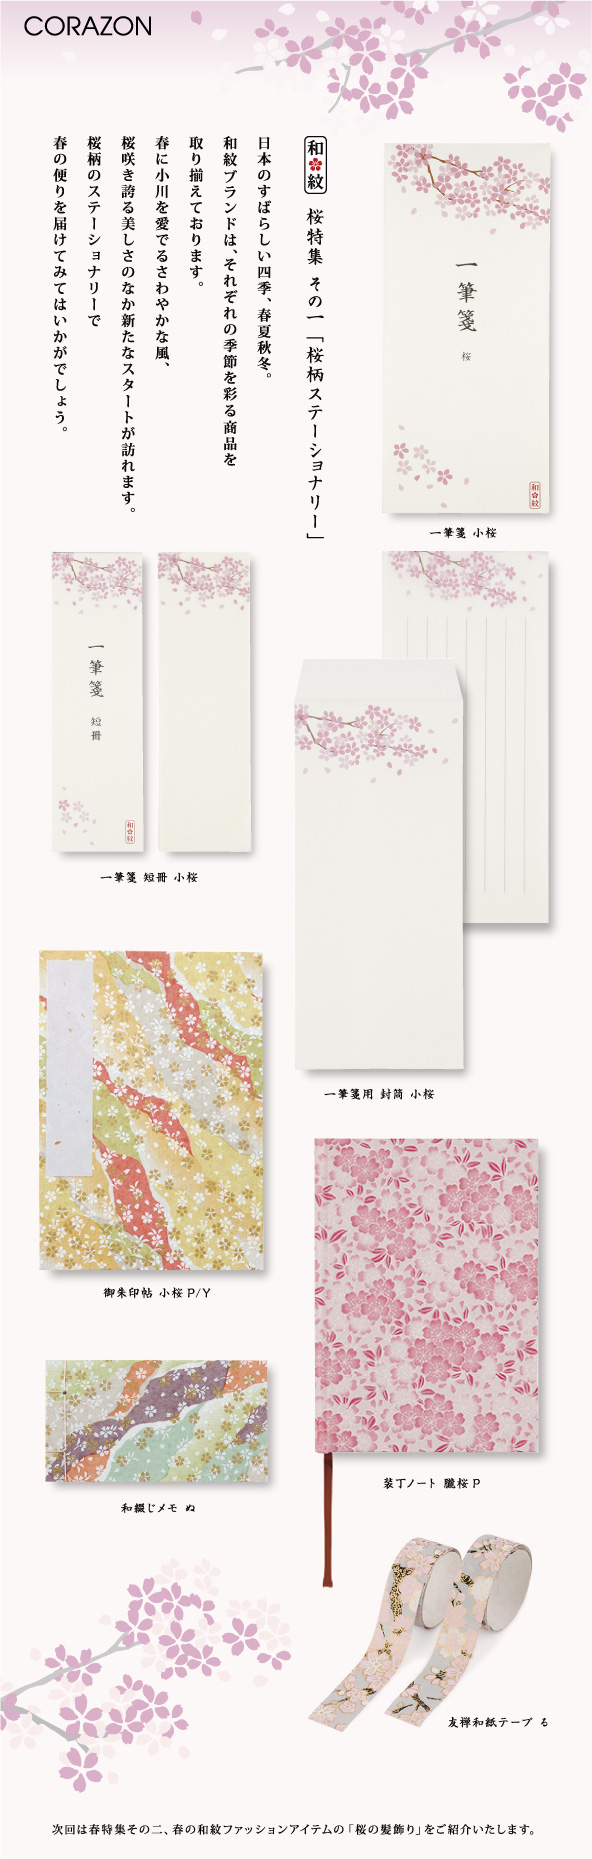 CORAZONメルマガ　20150106<br>

日本のすばらしい四季、春夏秋冬。<br>
和紋ブランドは、それぞれの季節を彩る商品を<br>
取り揃えております。<br>
春に小川を愛でるさわやかな風、<br>
桜咲き誇る美しさのなか新たなスタートが訪れます。<br>
桜柄のステーショナリーで<br>
春の便りを届けてみてはいかがでしょう。<br>

